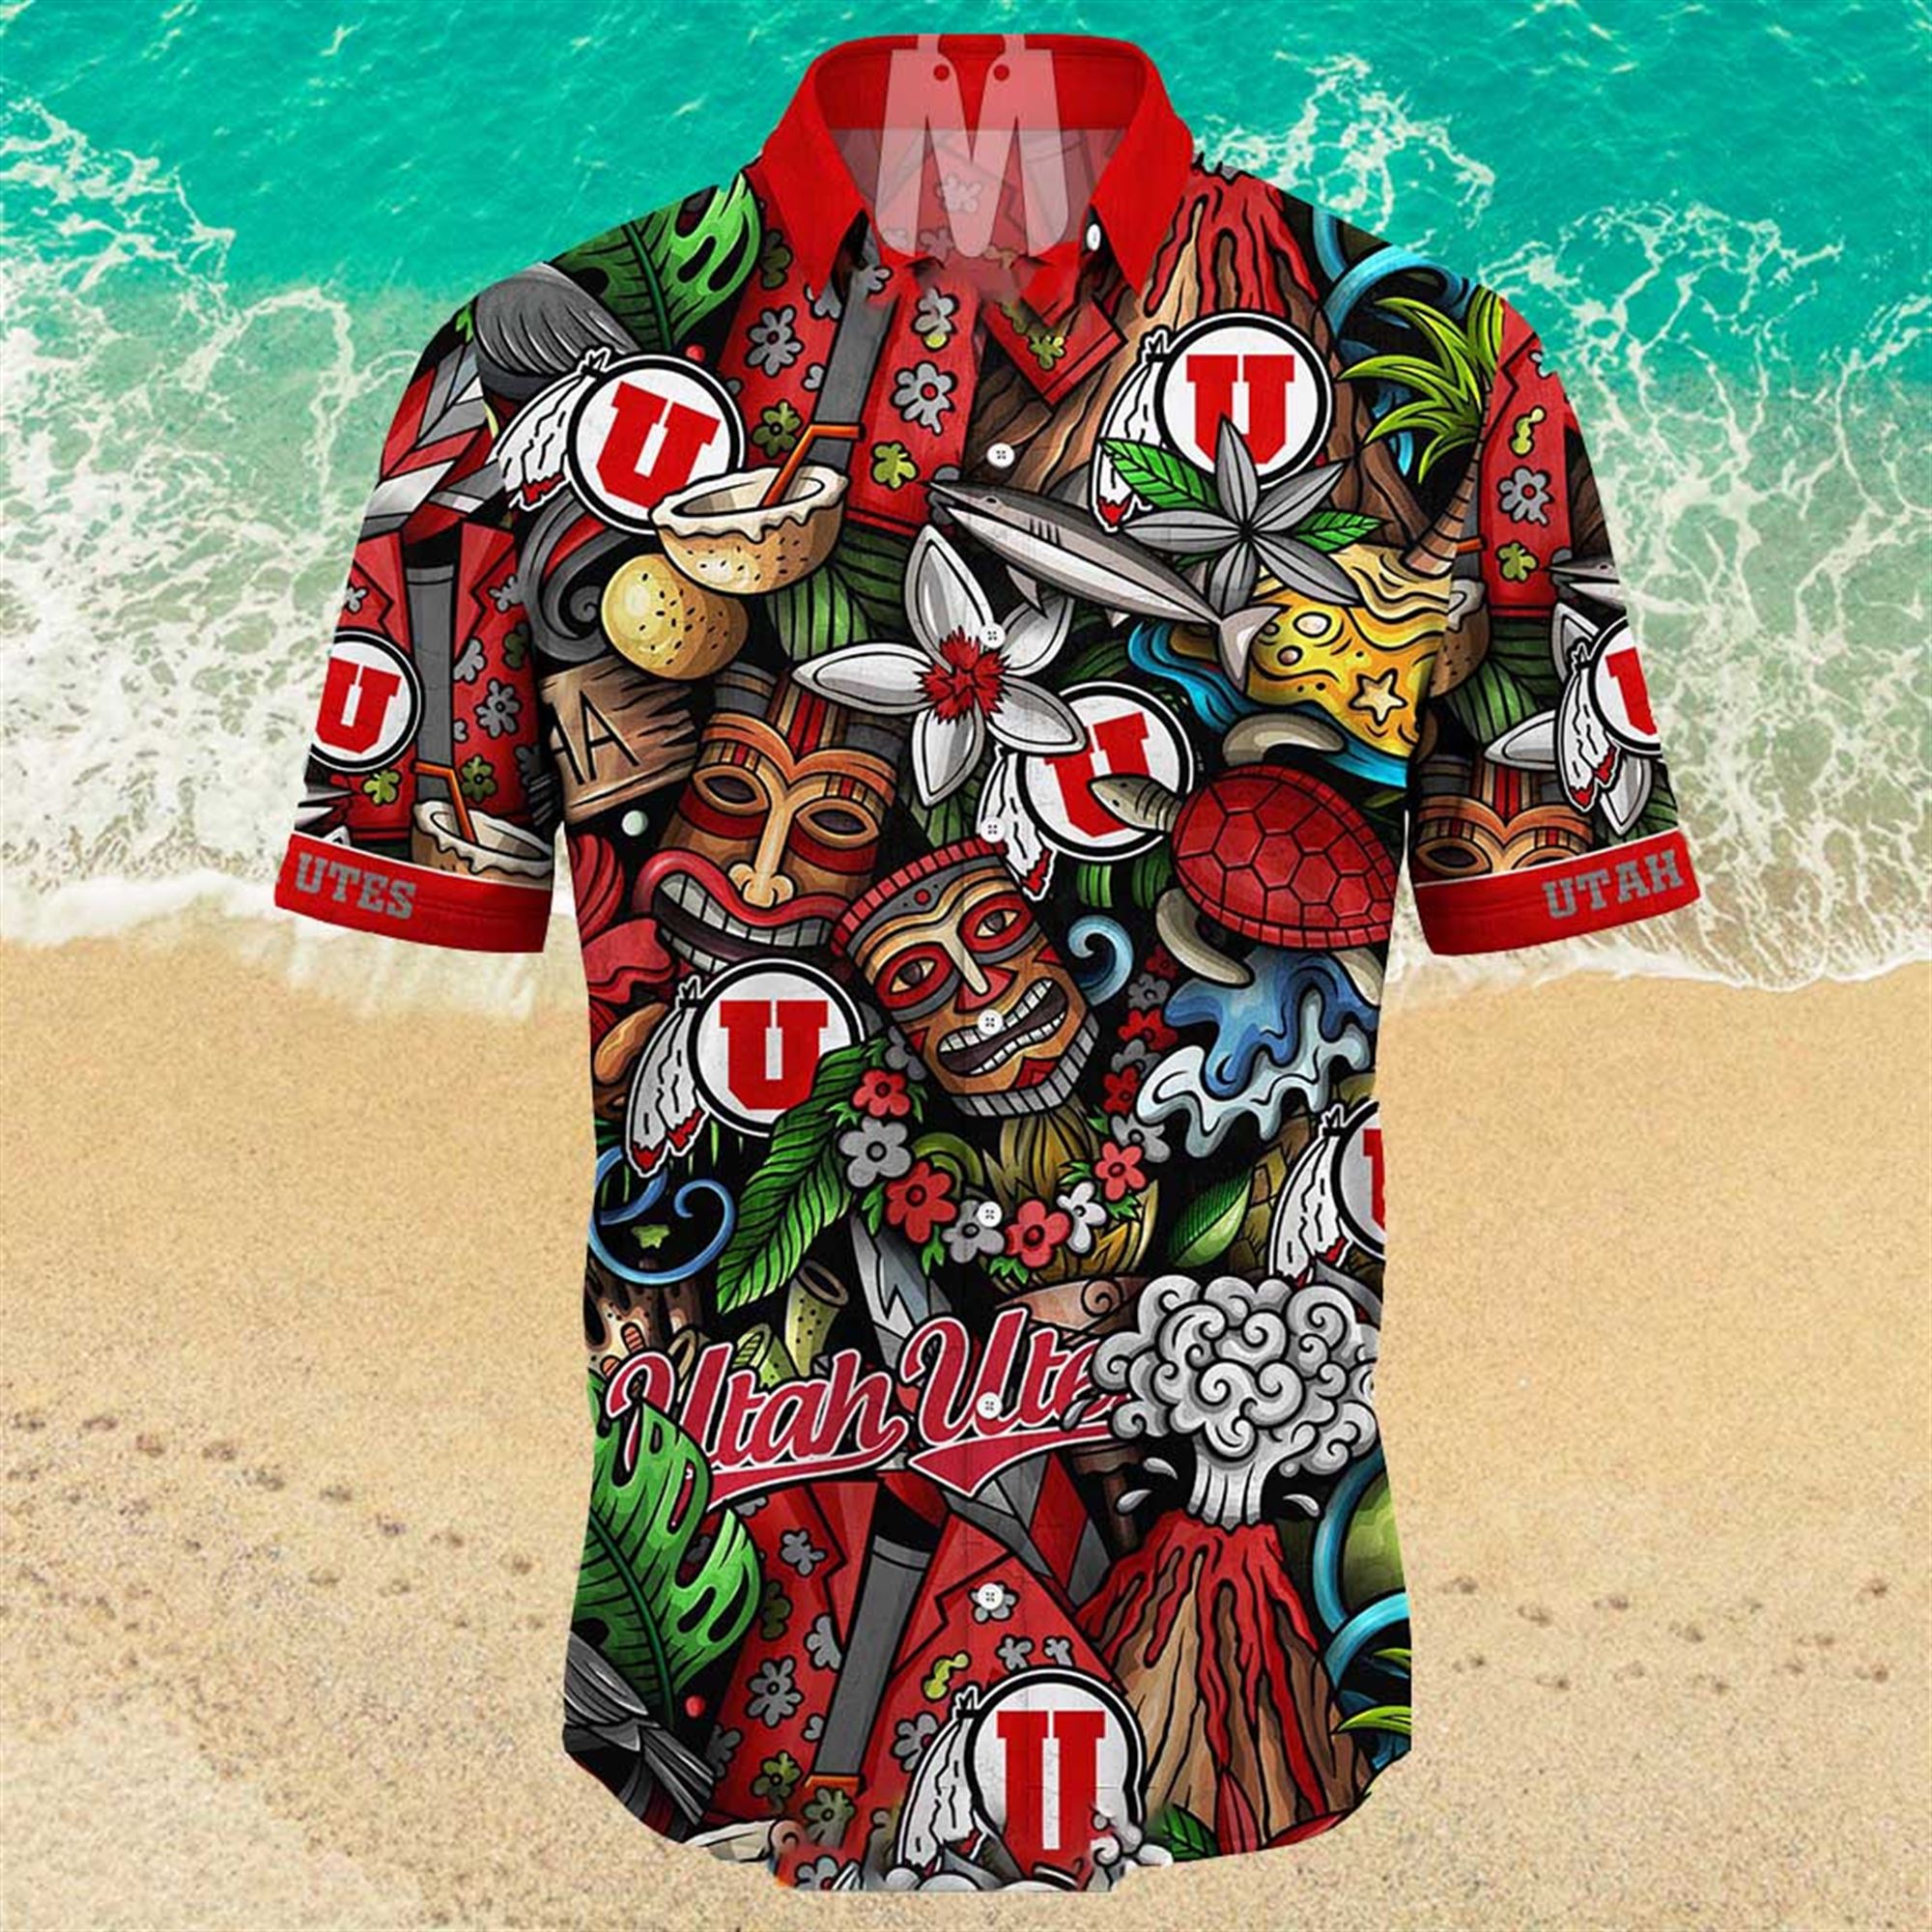 NEW Utah Utes Ncaa Mens Floral Button Up Hawaiian Shirt